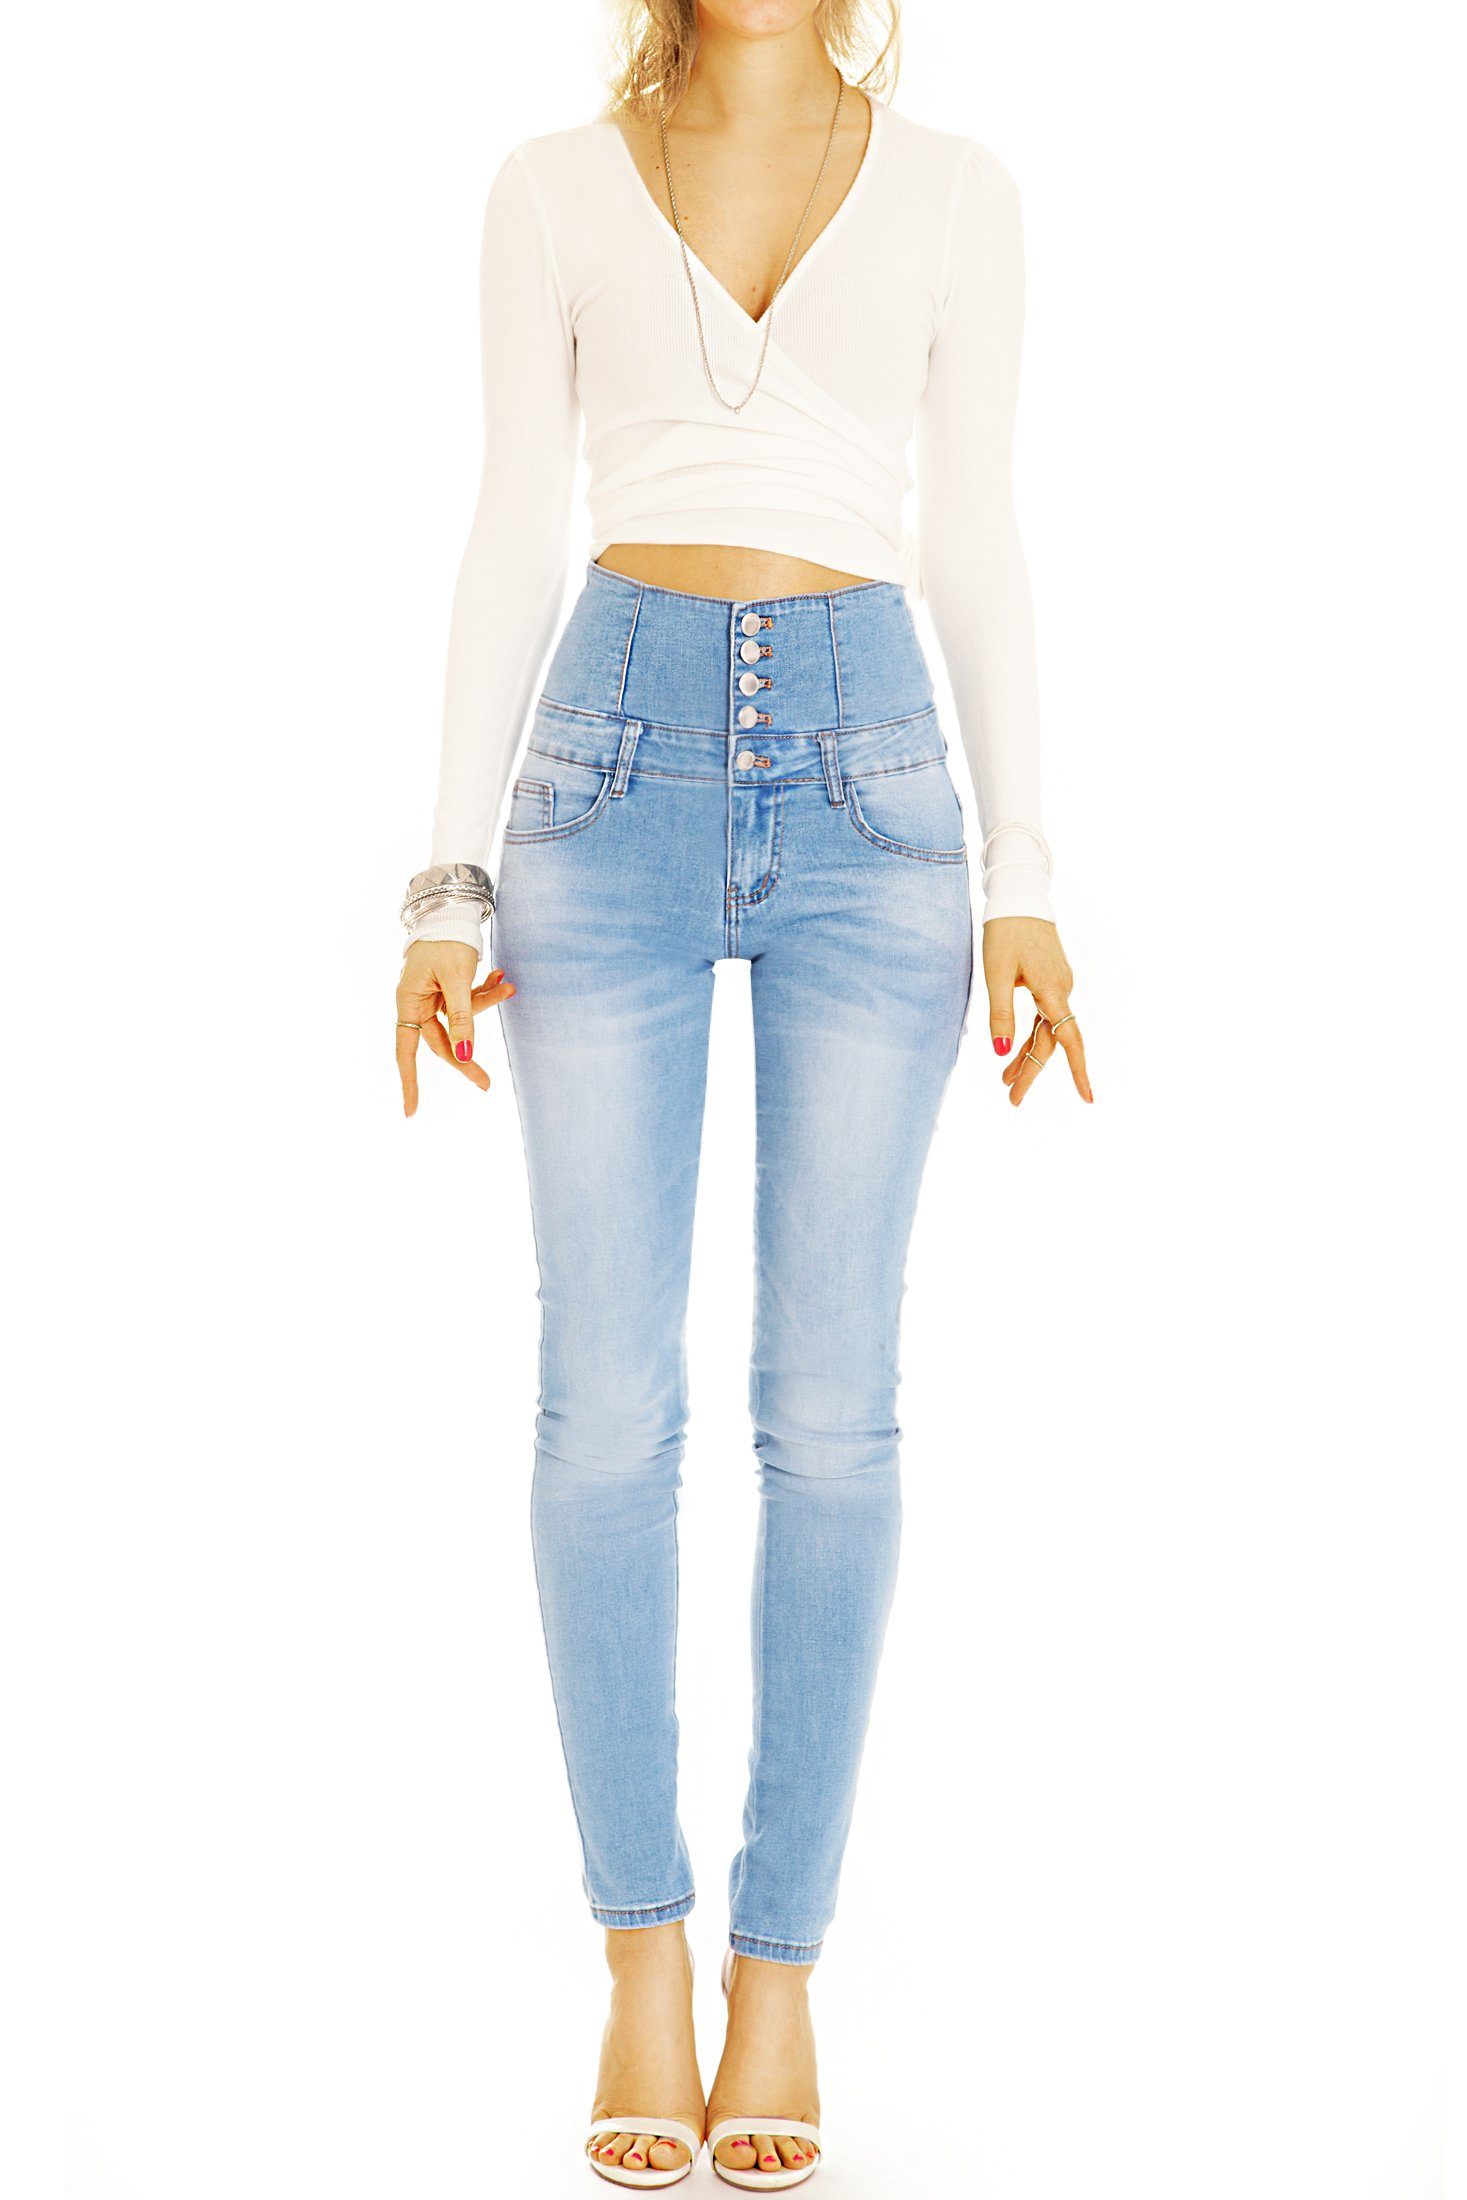 styled j35p langer Waist mit be High Knopfleiste Jeans High-waist-Jeans Röhrenjeans High - mit 5-Pocket-Style, Waist Damen Stretch-Anteil, -